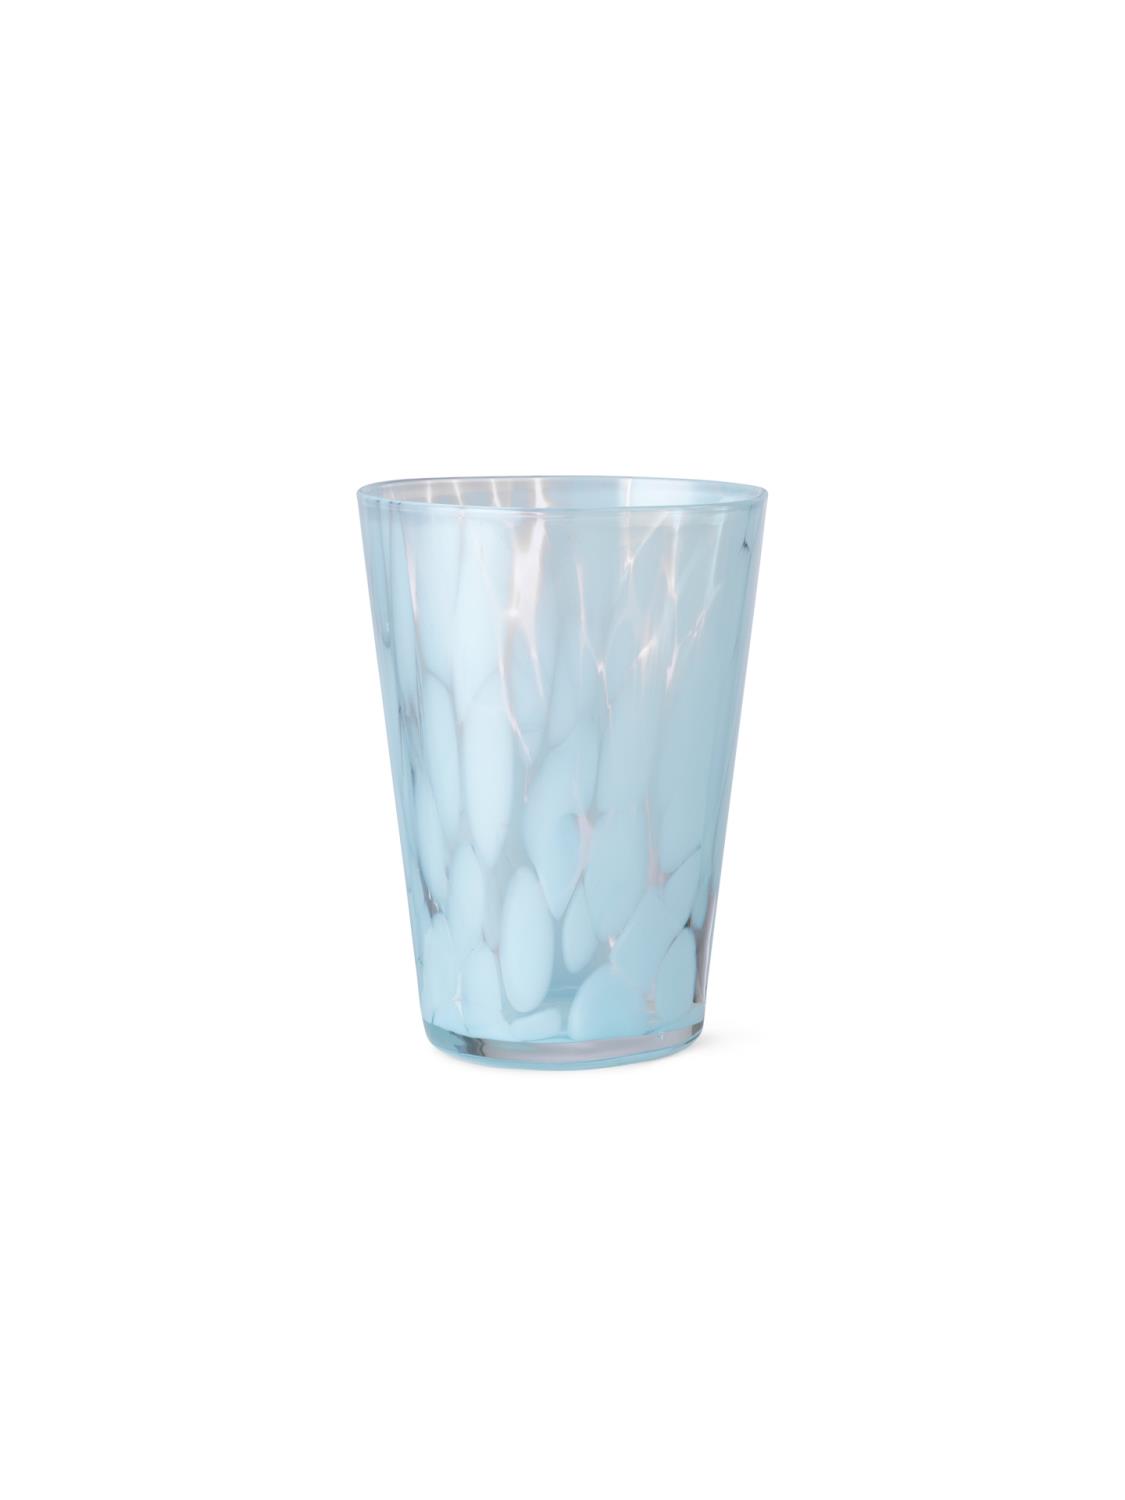 Ferm Living - Casca Glass - Pale Blue